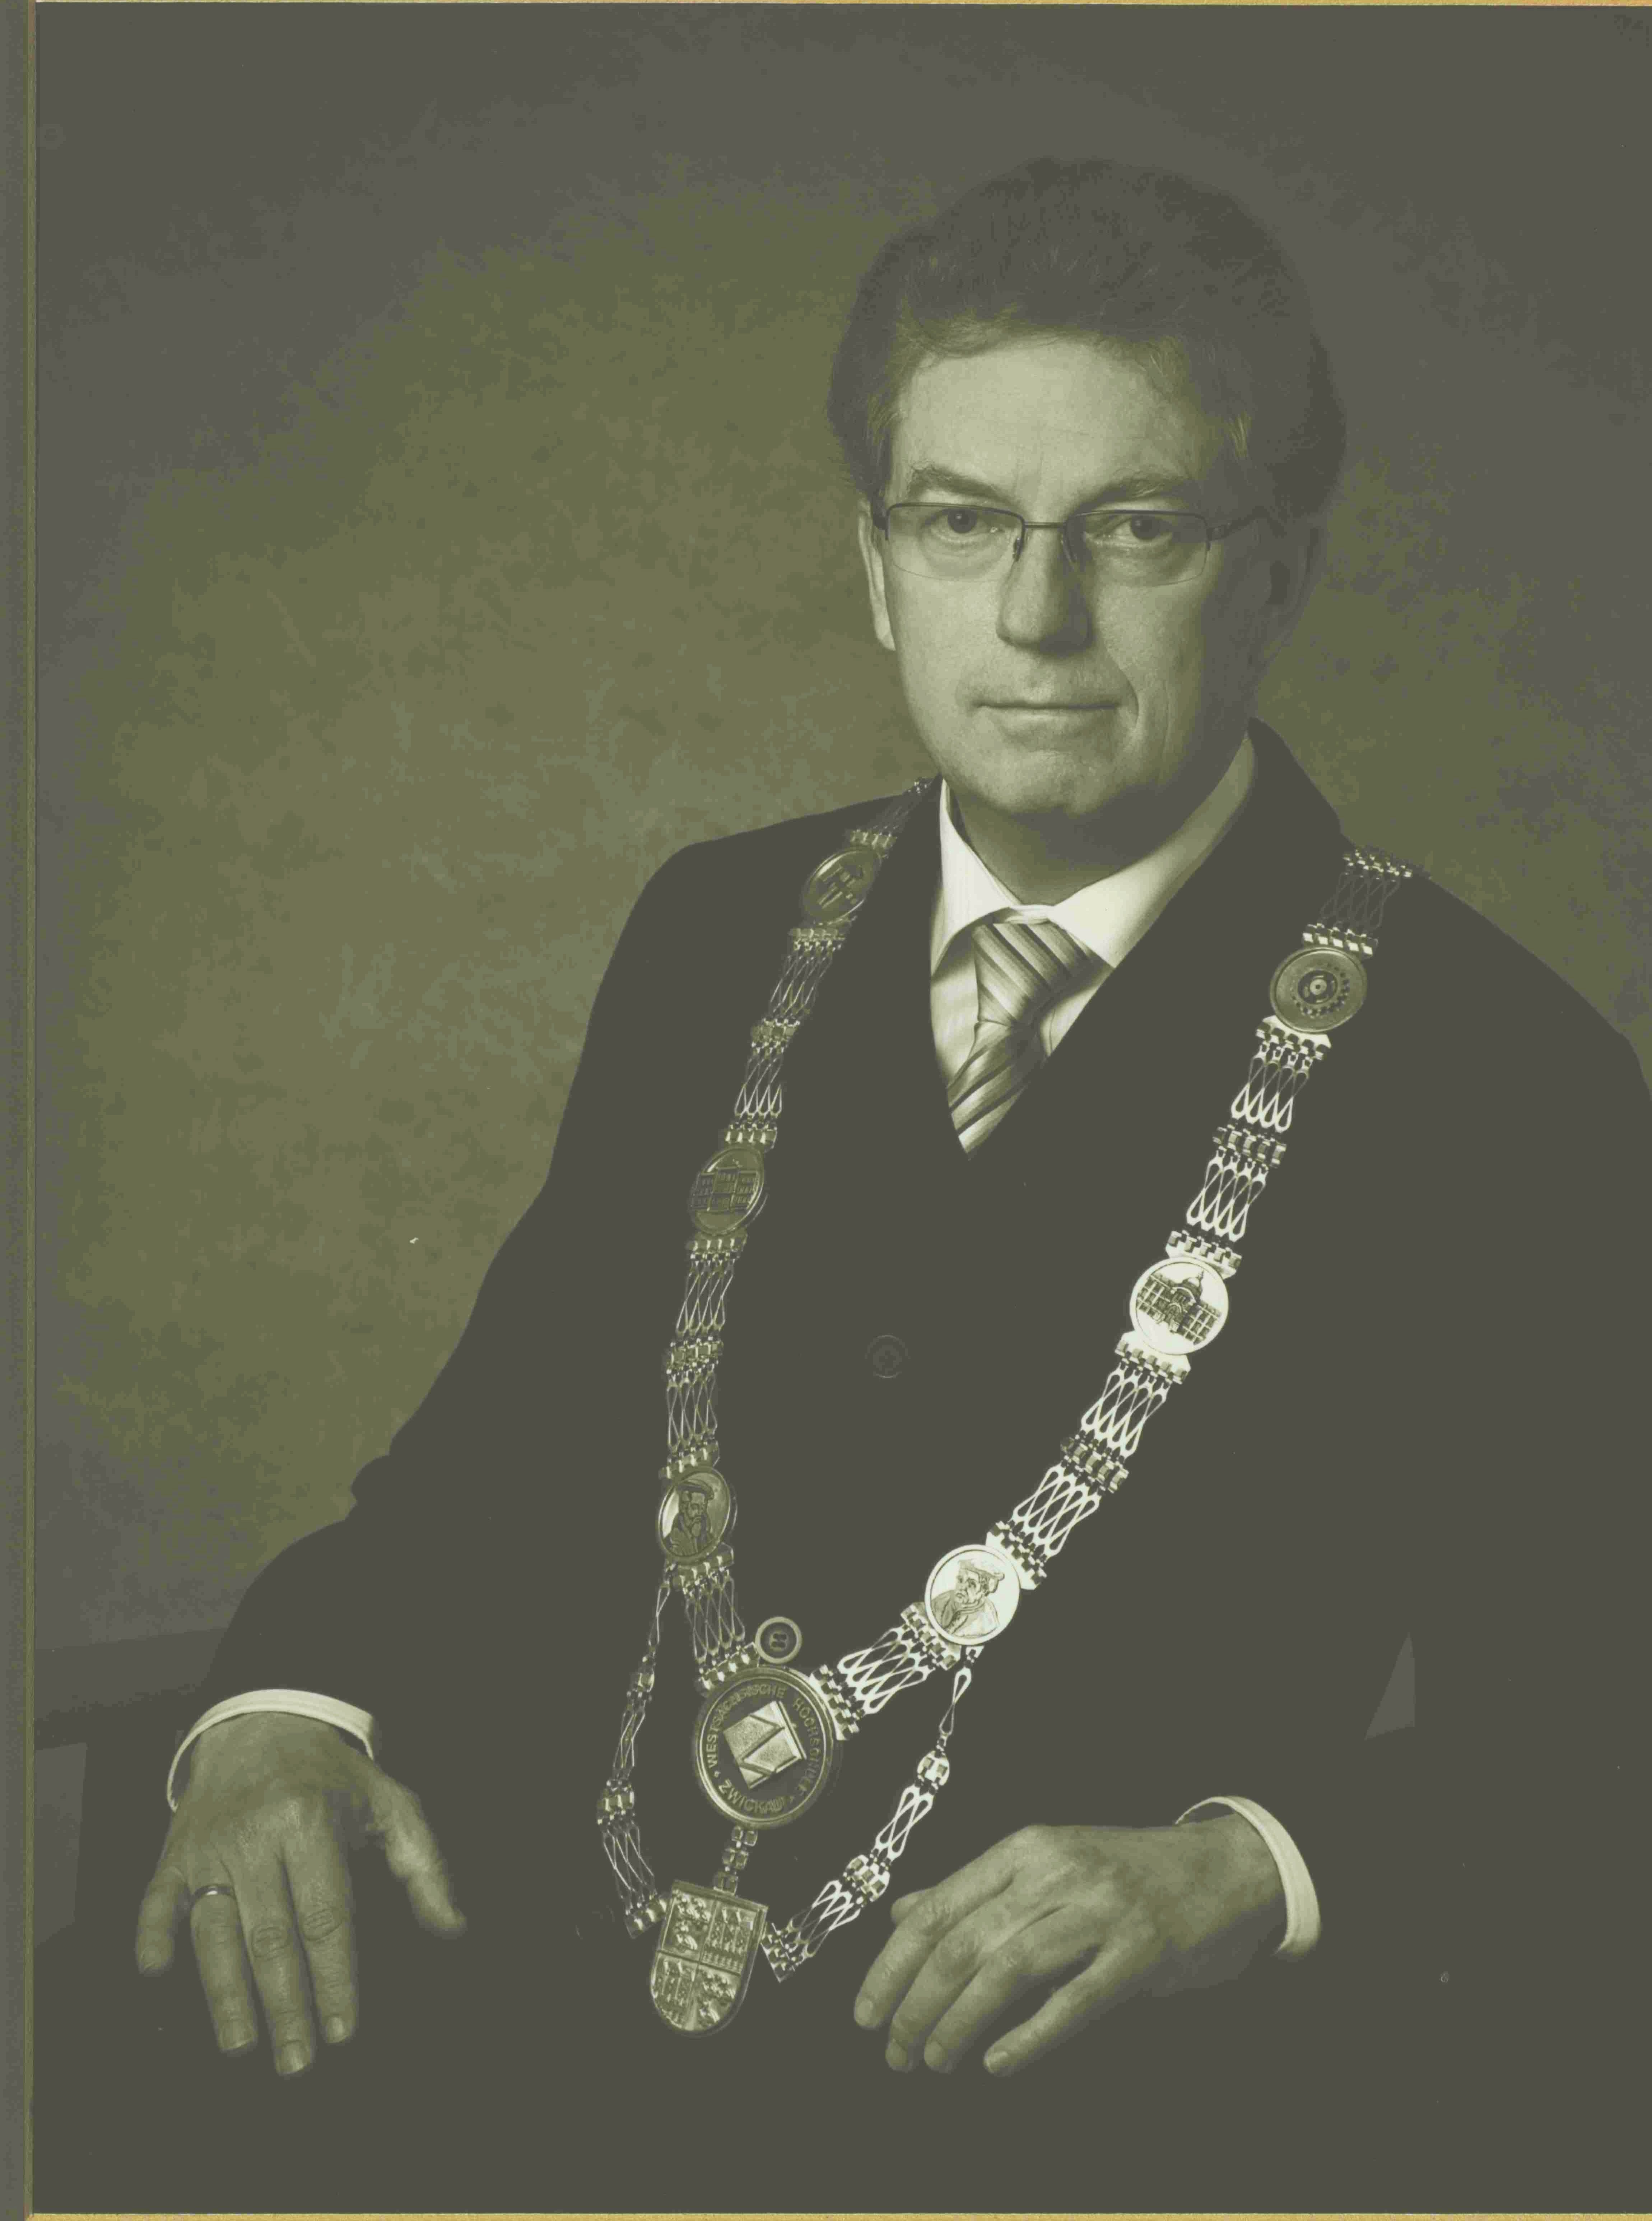 Foto: Profilbild von Rektor Fellenberg mit Rektorkette.